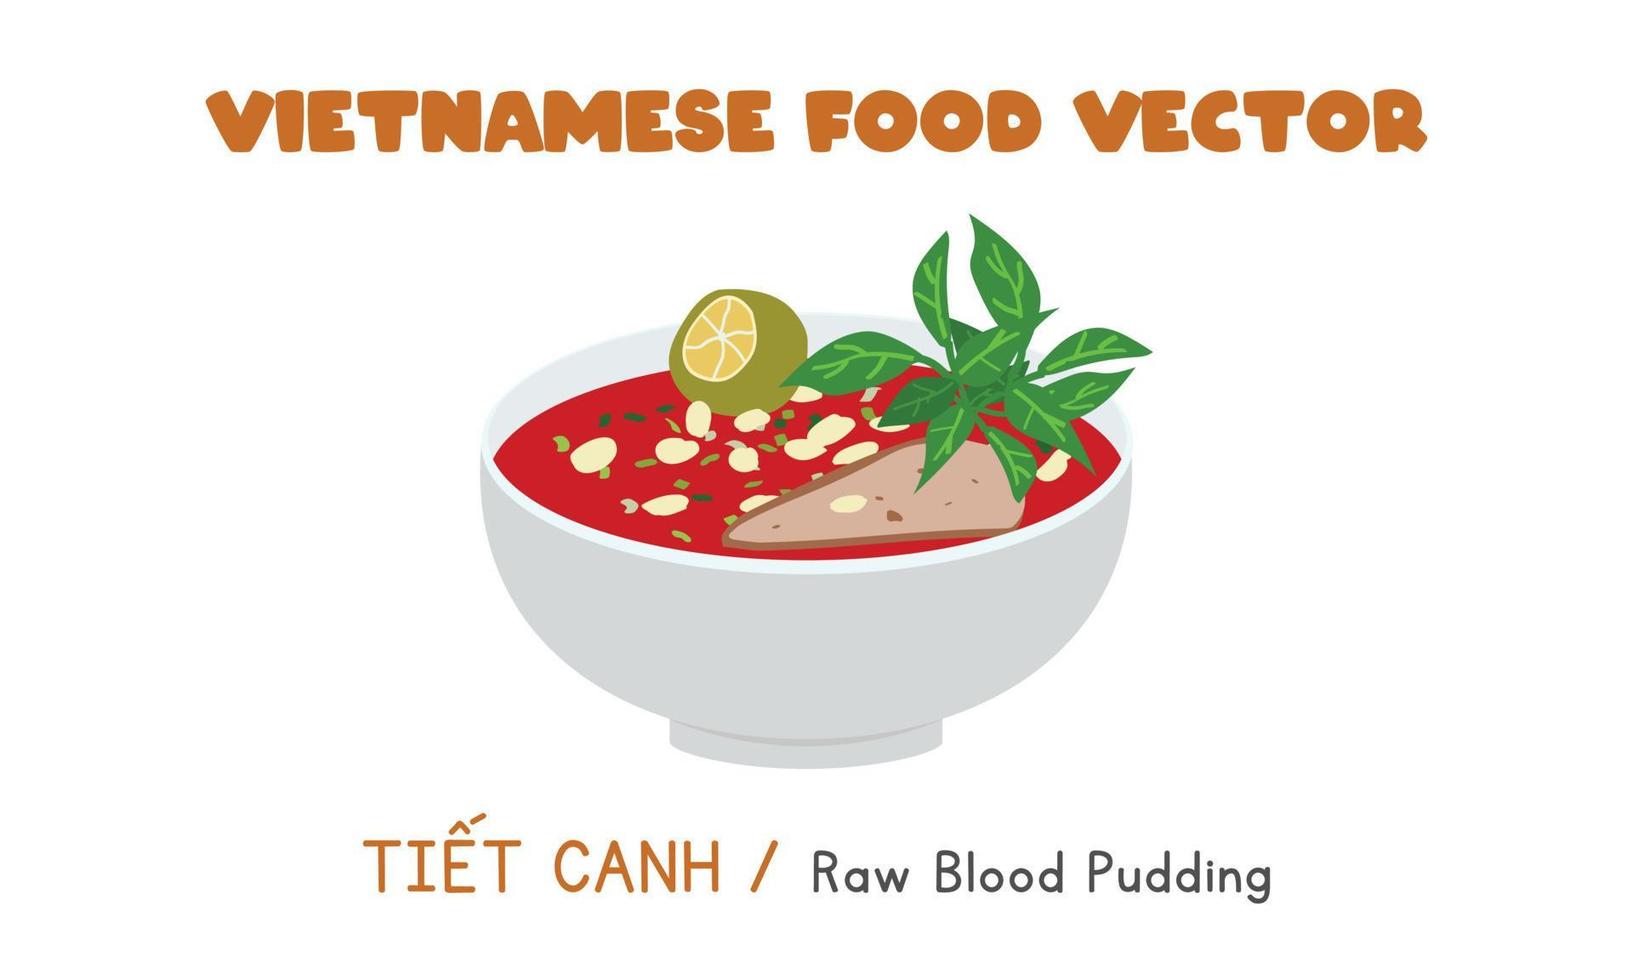 conception de vecteur plat de boudin de sang cru vietnamien. tiet canh clipart cartoon style. nourriture asiatique. cuisine vietnamienne. nourriture effrayante, nourriture d'horreur